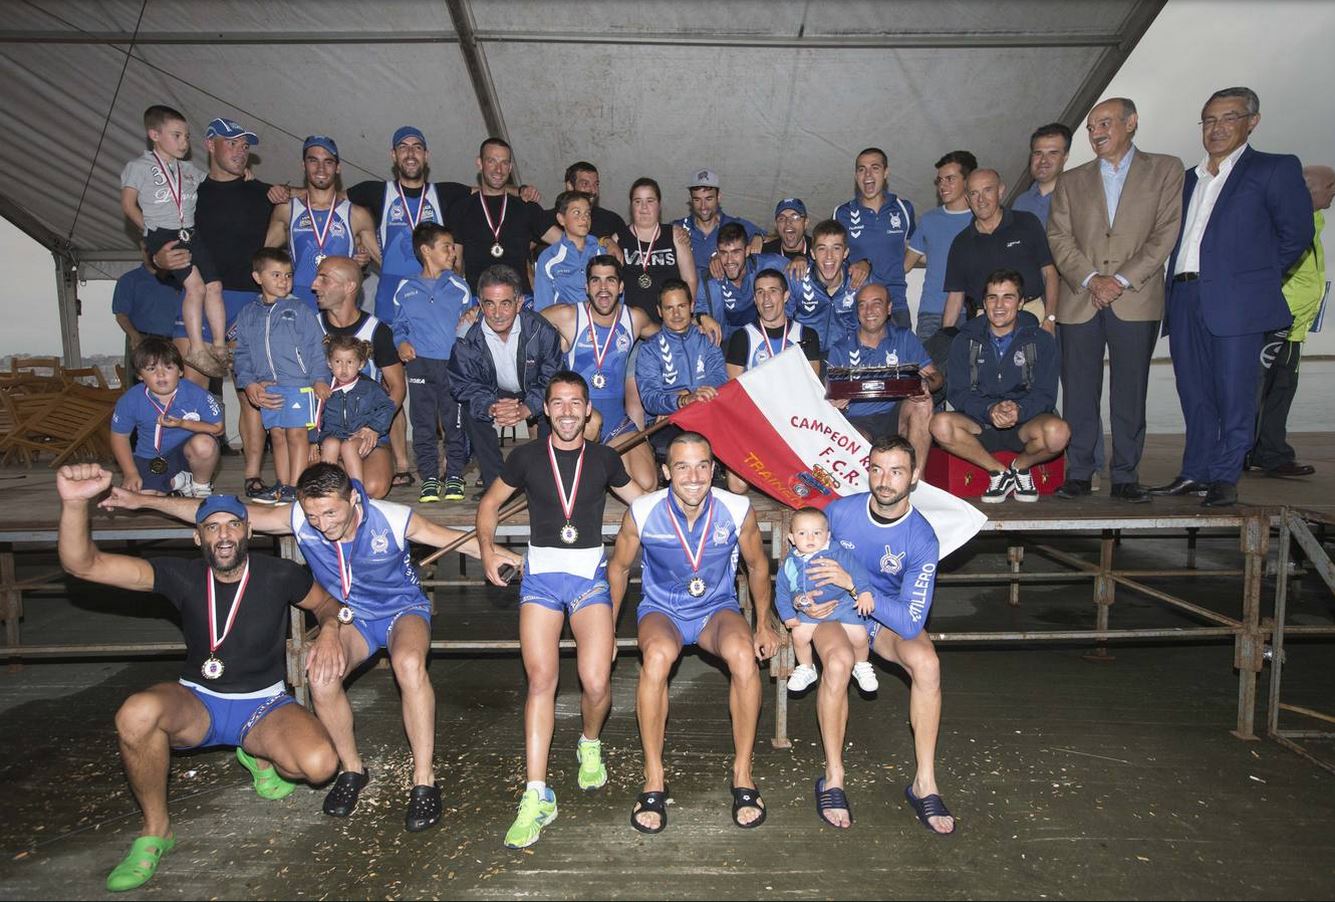 LI Campeonato Regional de Traineras, celebrado en Pedreña el 21 de julio de 2015. Foto Diario Montañés (Roberto Ruiz).